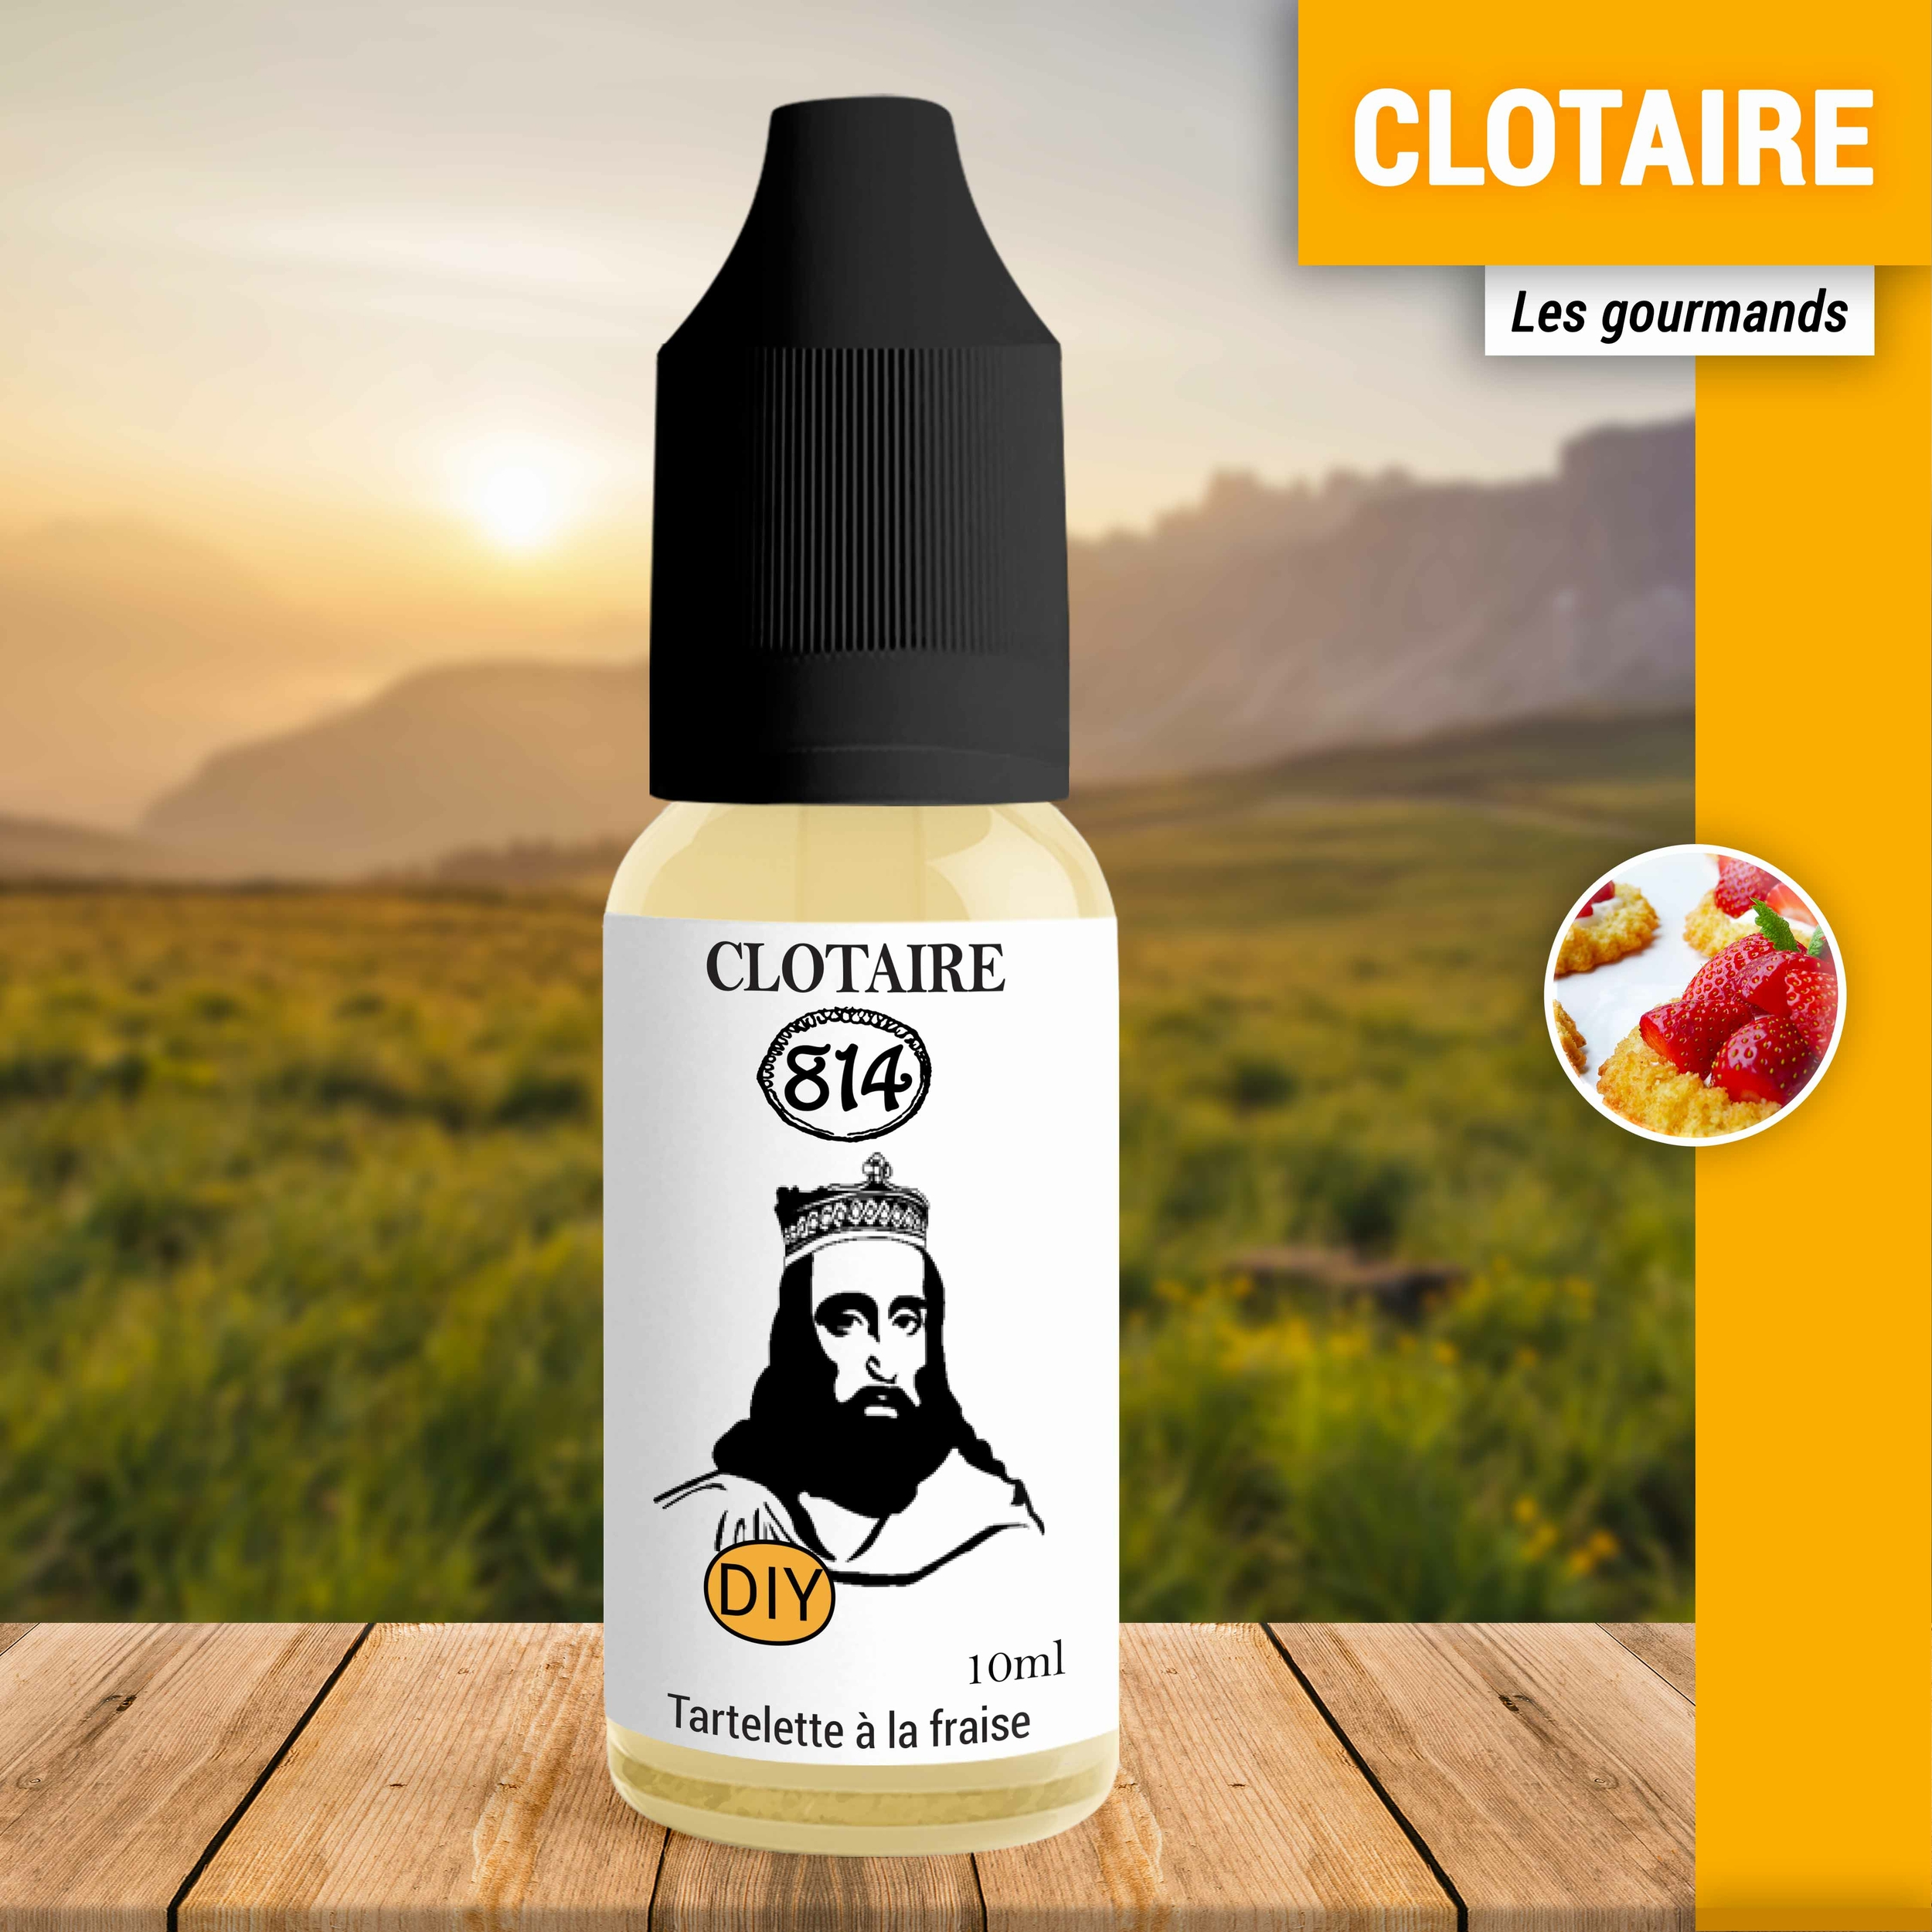 Clotaire_Gourmands_HD